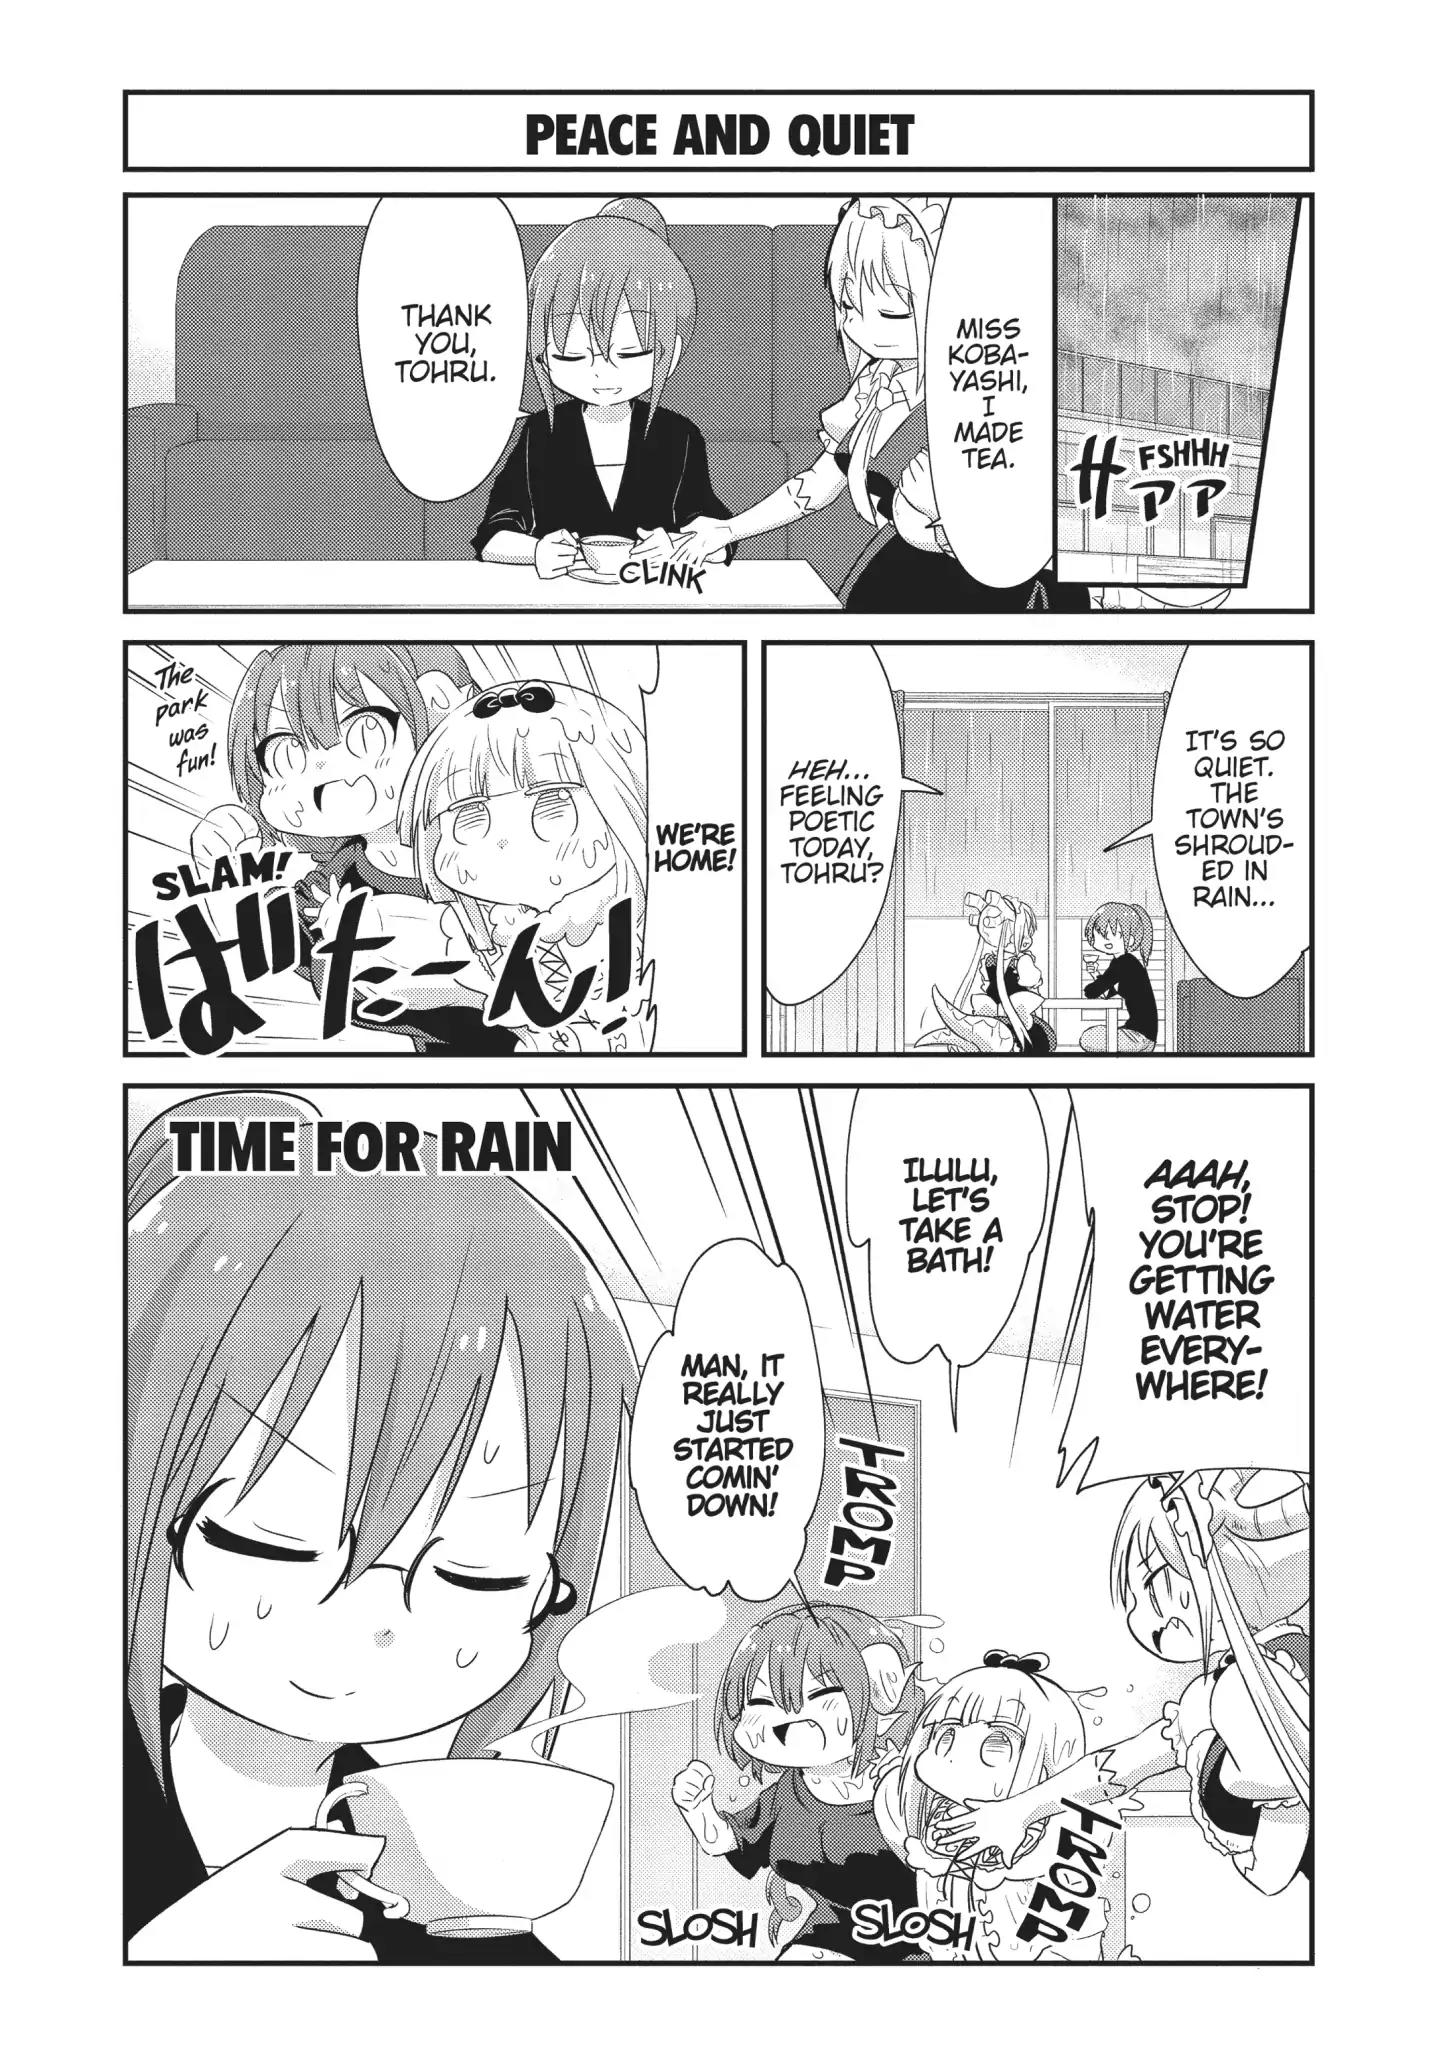 Kobayashi-San Chi No Maid Dragon: Kanna No Nichijou Vol.6 Chapter 59: Time For Rain - Picture 1